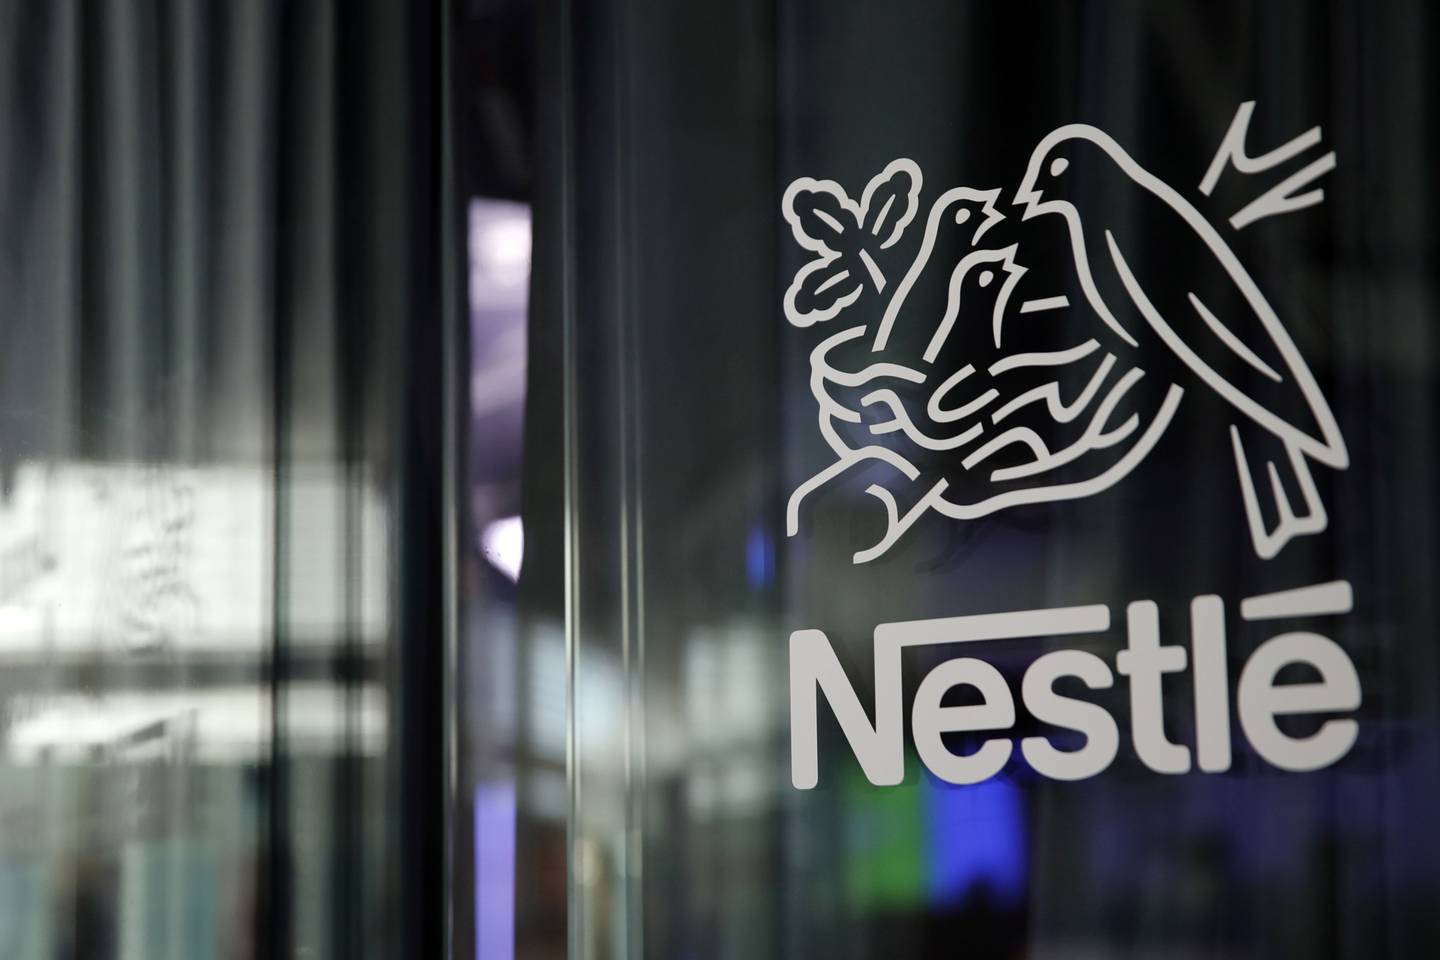 El logo de Nestlé